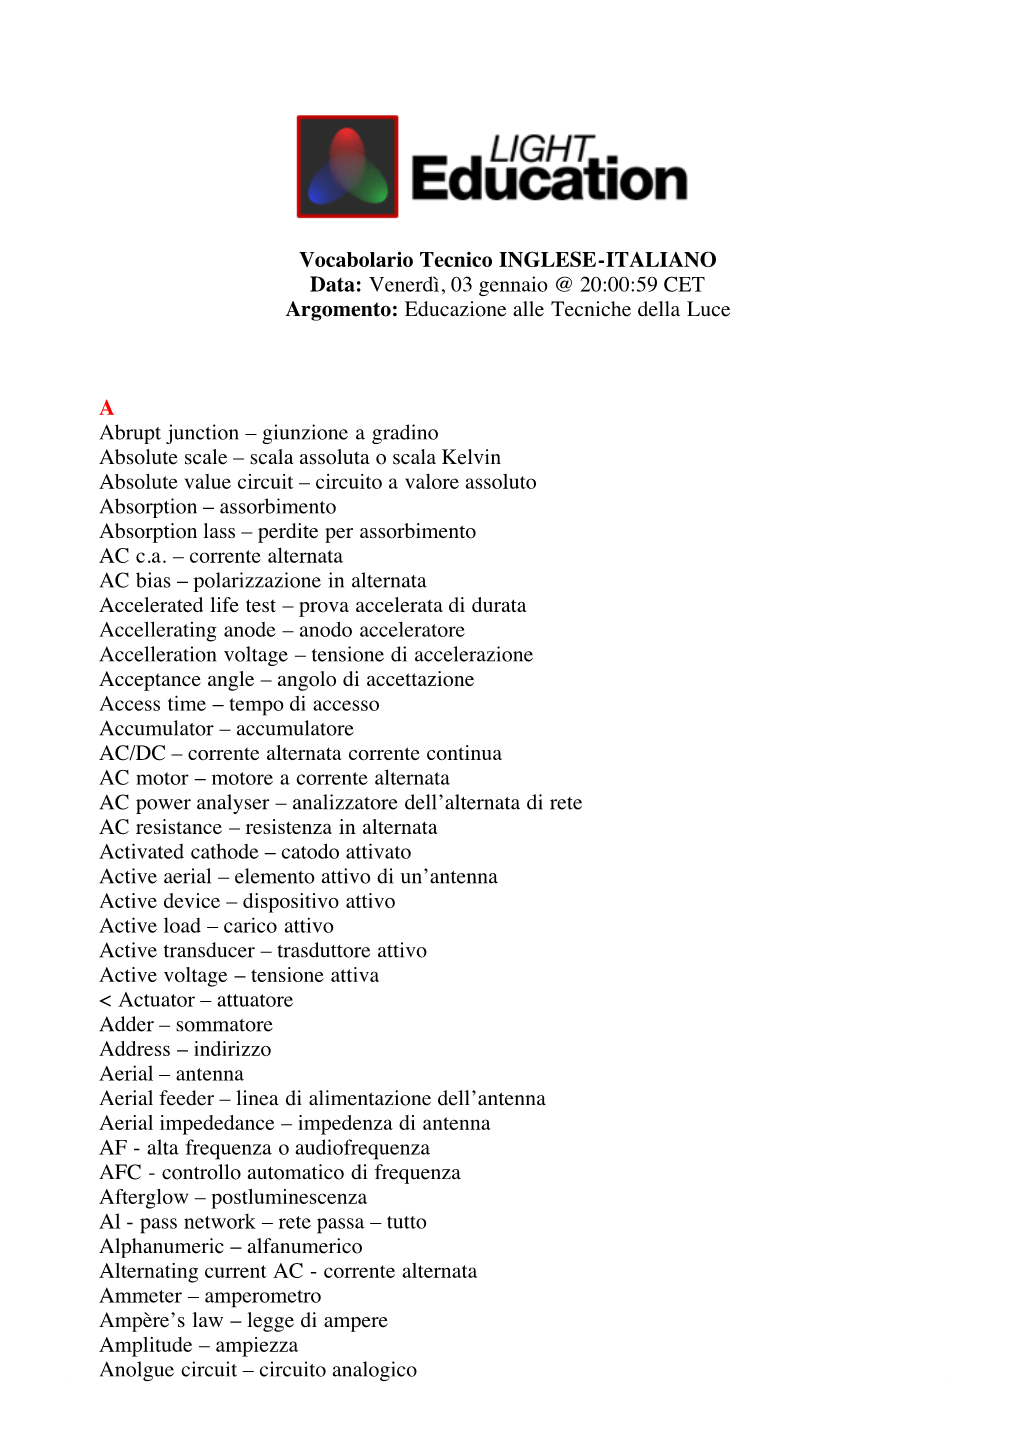 Vocabolario Tecnico INGLESE-ITALIANO Data: Venerdì, 03 Gennaio @ 20:00:59 CET Argomento: Educazione Alle Tecniche Della Luce